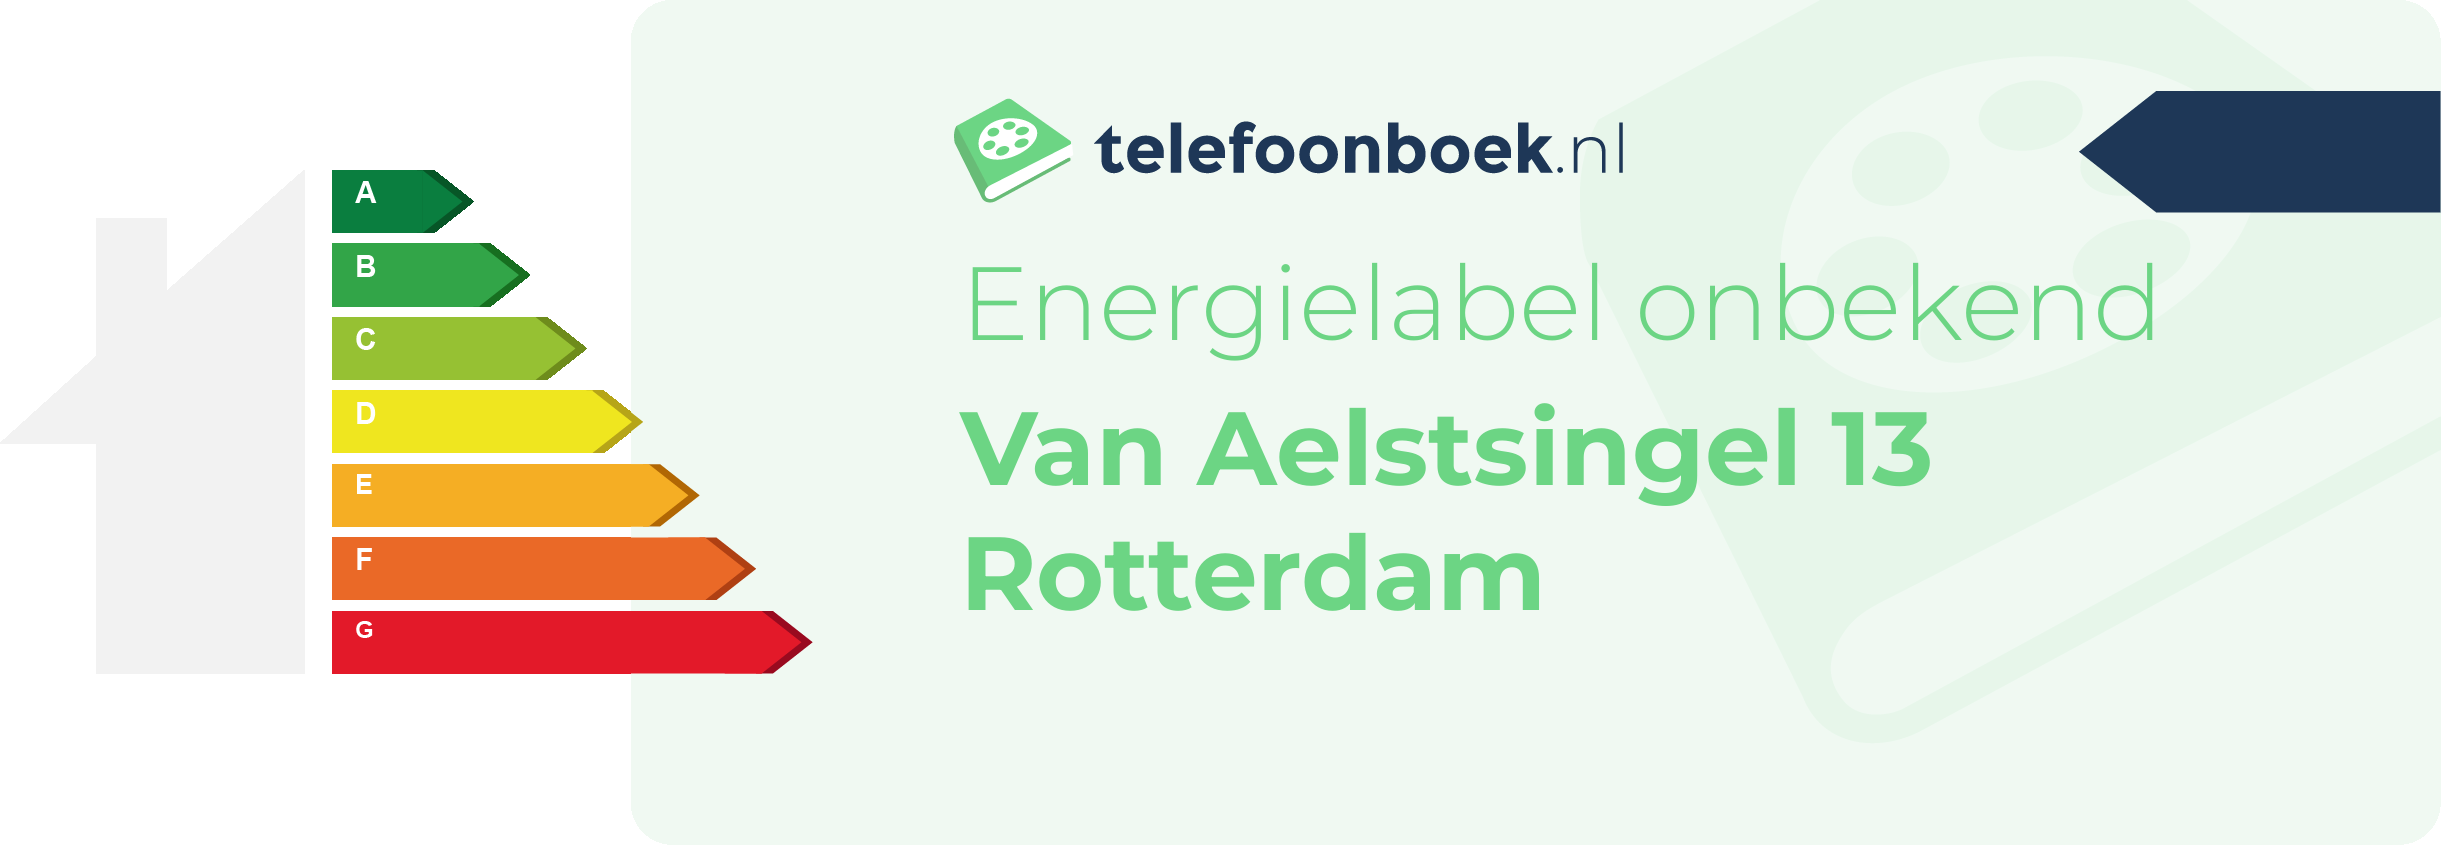 Energielabel Van Aelstsingel 13 Rotterdam